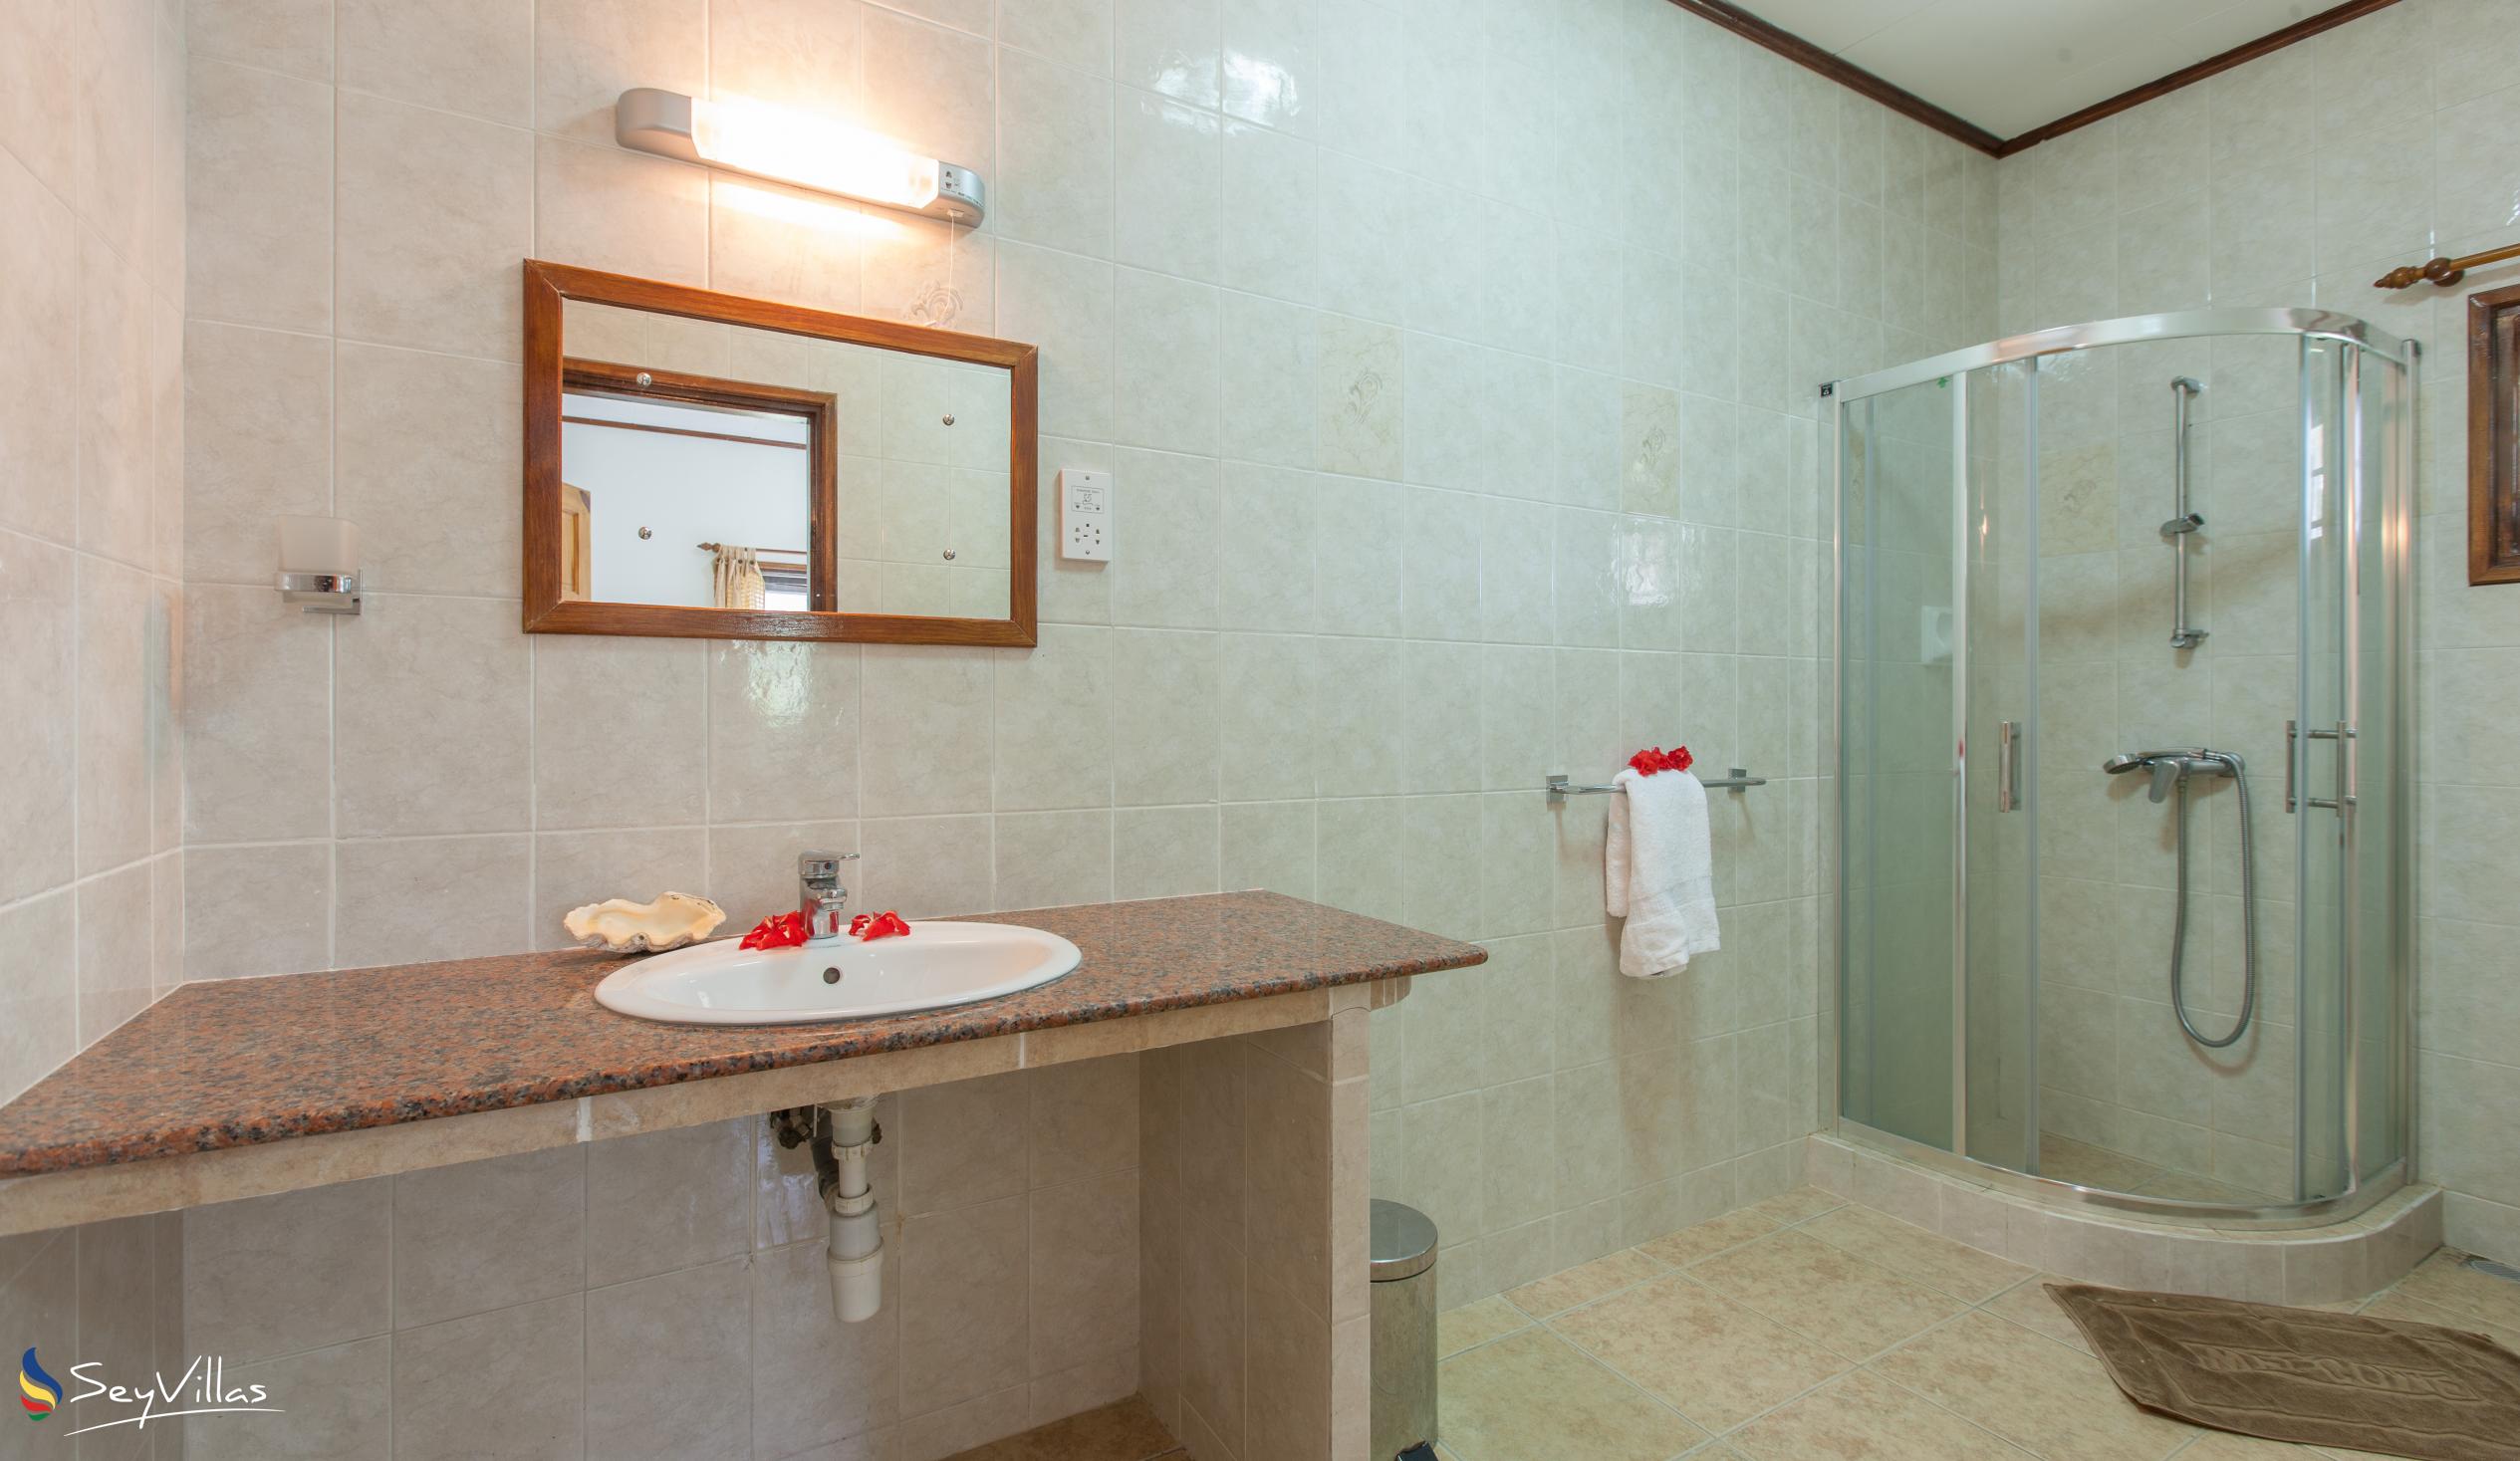 Foto 11: Zerof Self Catering  Apartments - Appartamento 1 camera - La Digue (Seychelles)